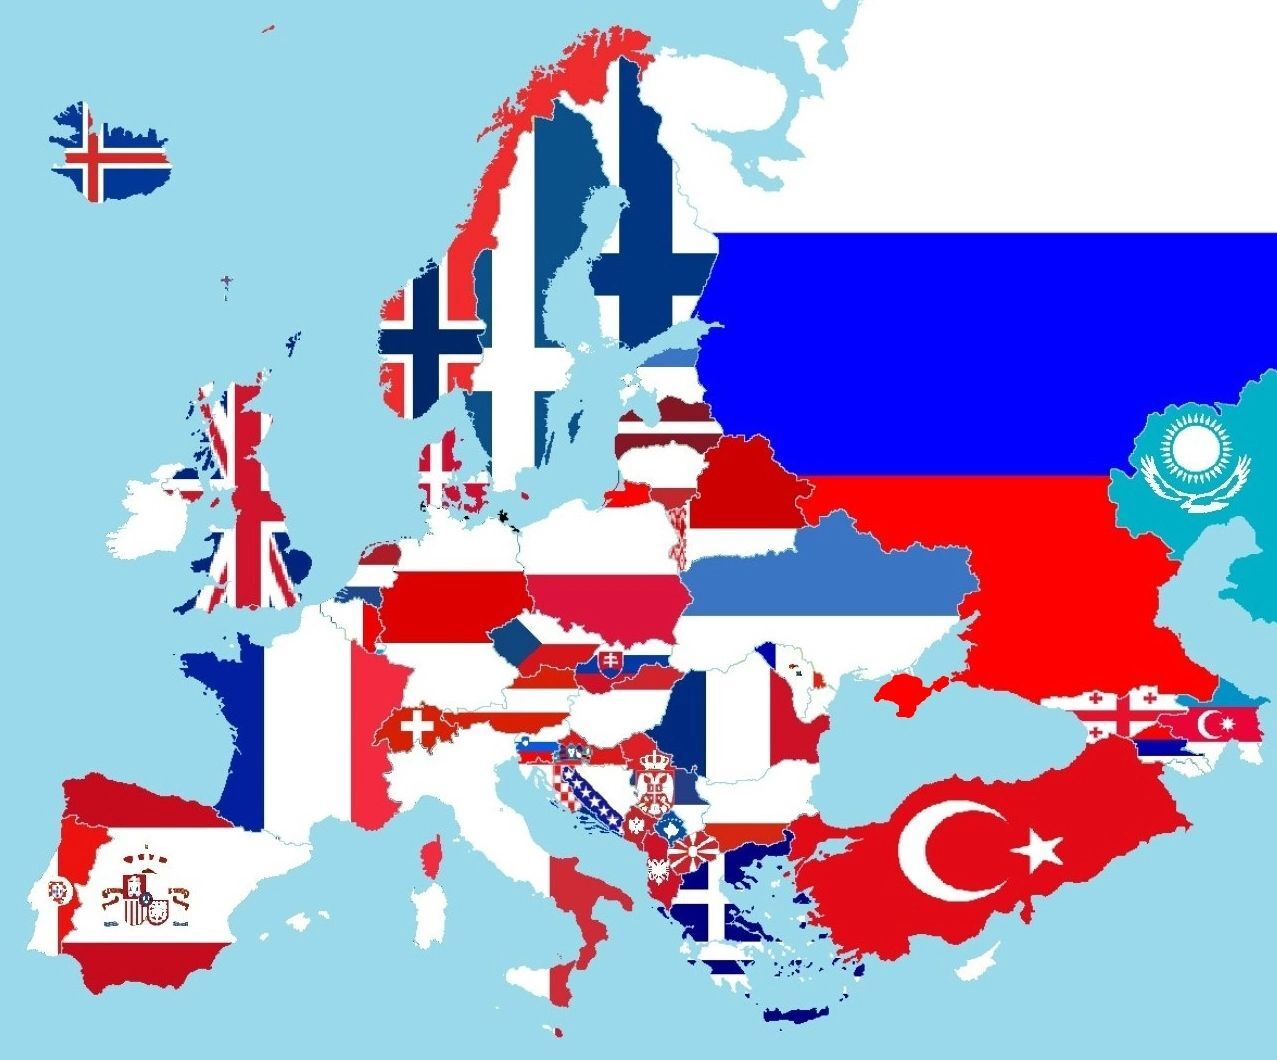 Карта Европы, но на флагах стран оставлены только белые, синие и красныецвета